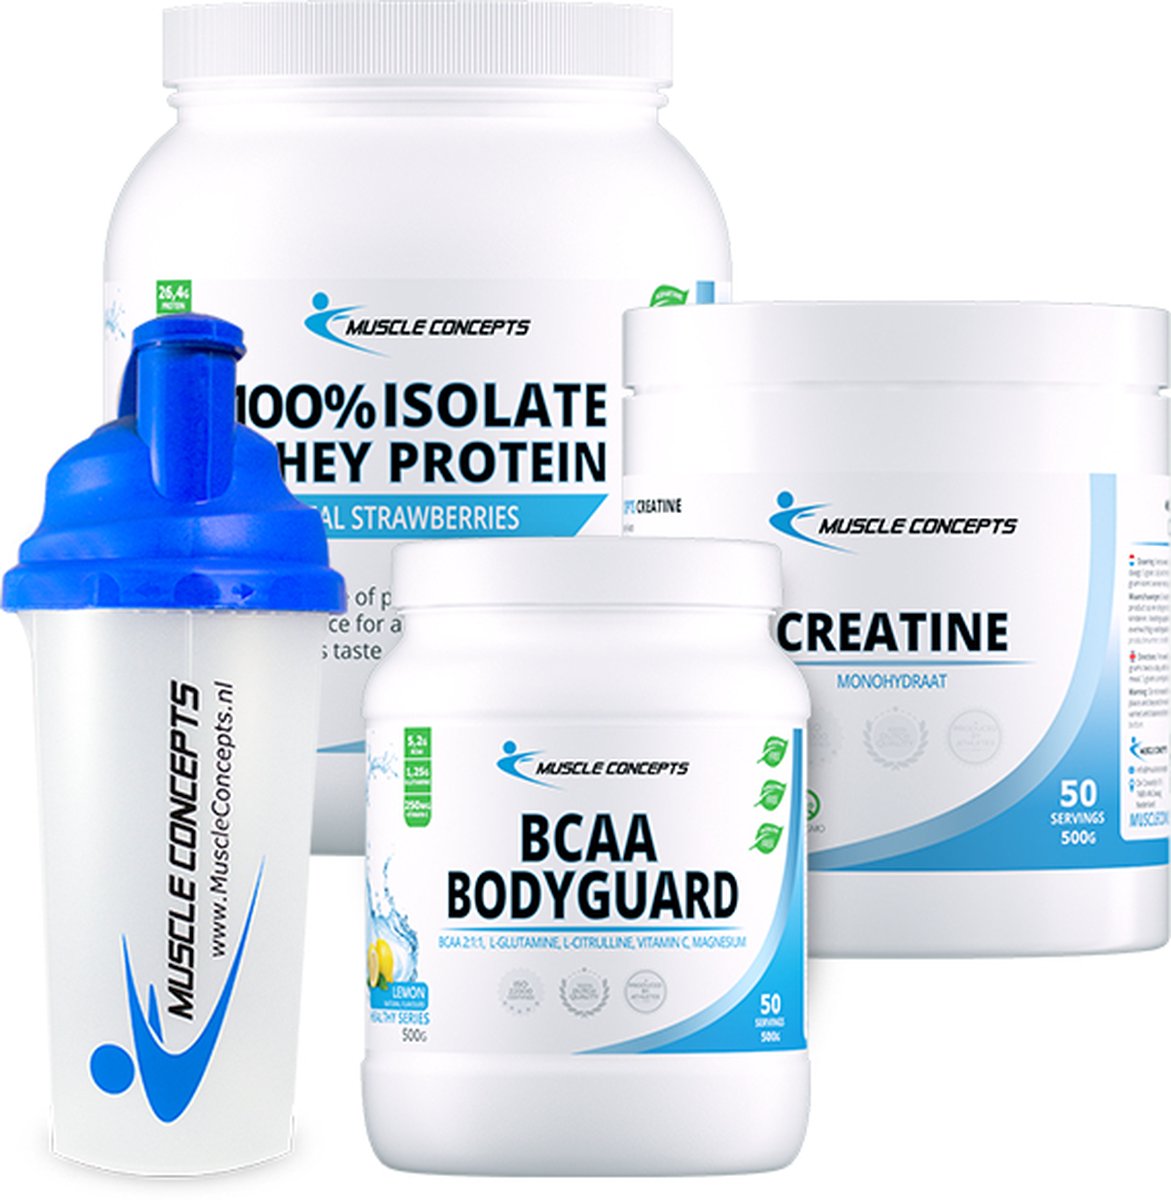 Introductiepakket incl. gratis shakebeker | Muscle Concepts - Creatine, BCAA Bodyguard & Whey Isolaat (100%) Aardbei eiwitten